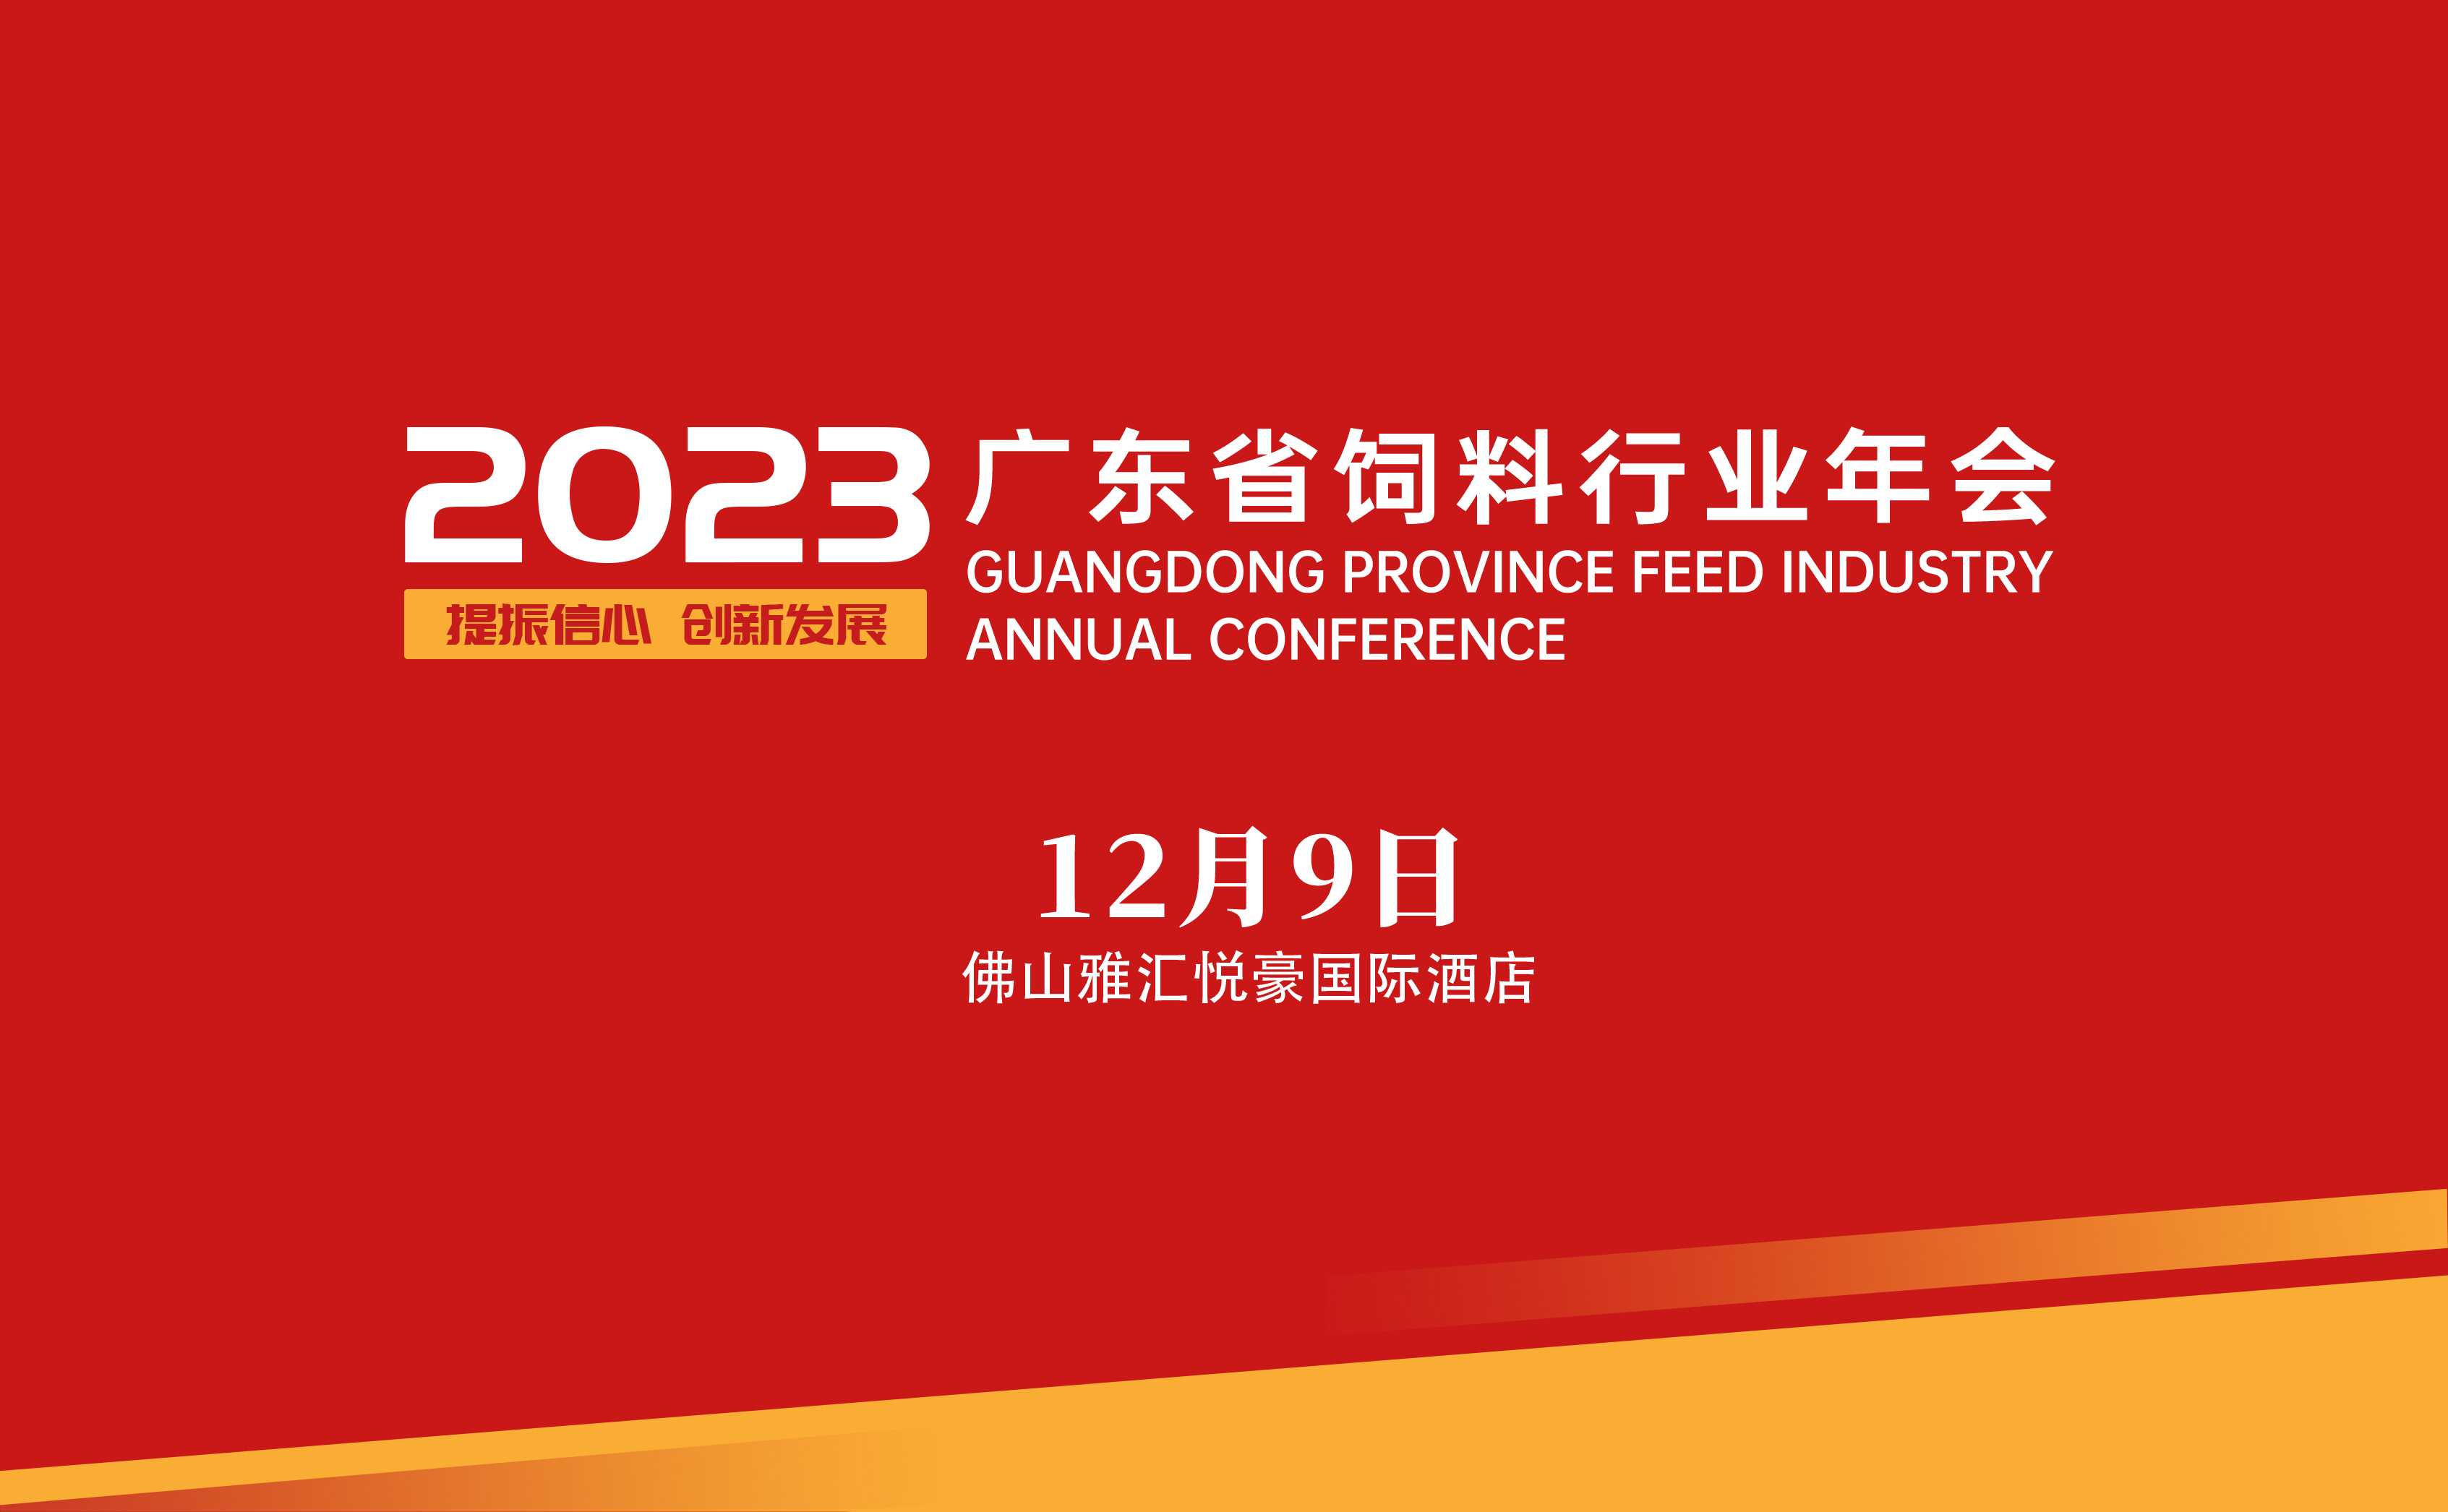 <b>2023年广东省饲料行业年会 筹备工作的公告（一）</b>